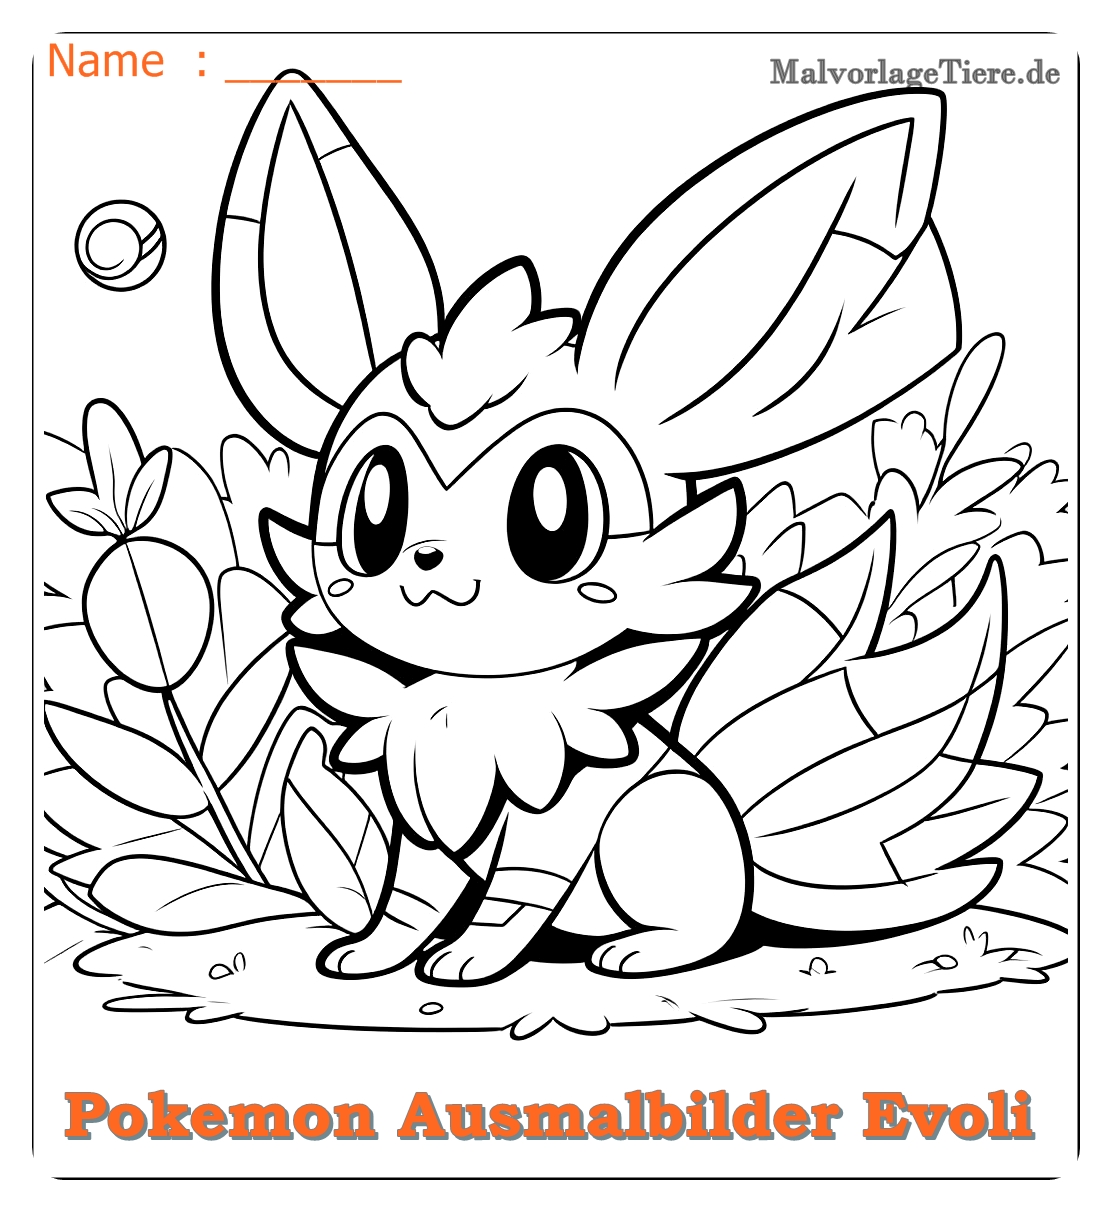 pokemon ausmalbilder evoli entwicklungen 02 by malvorlagetiere.de